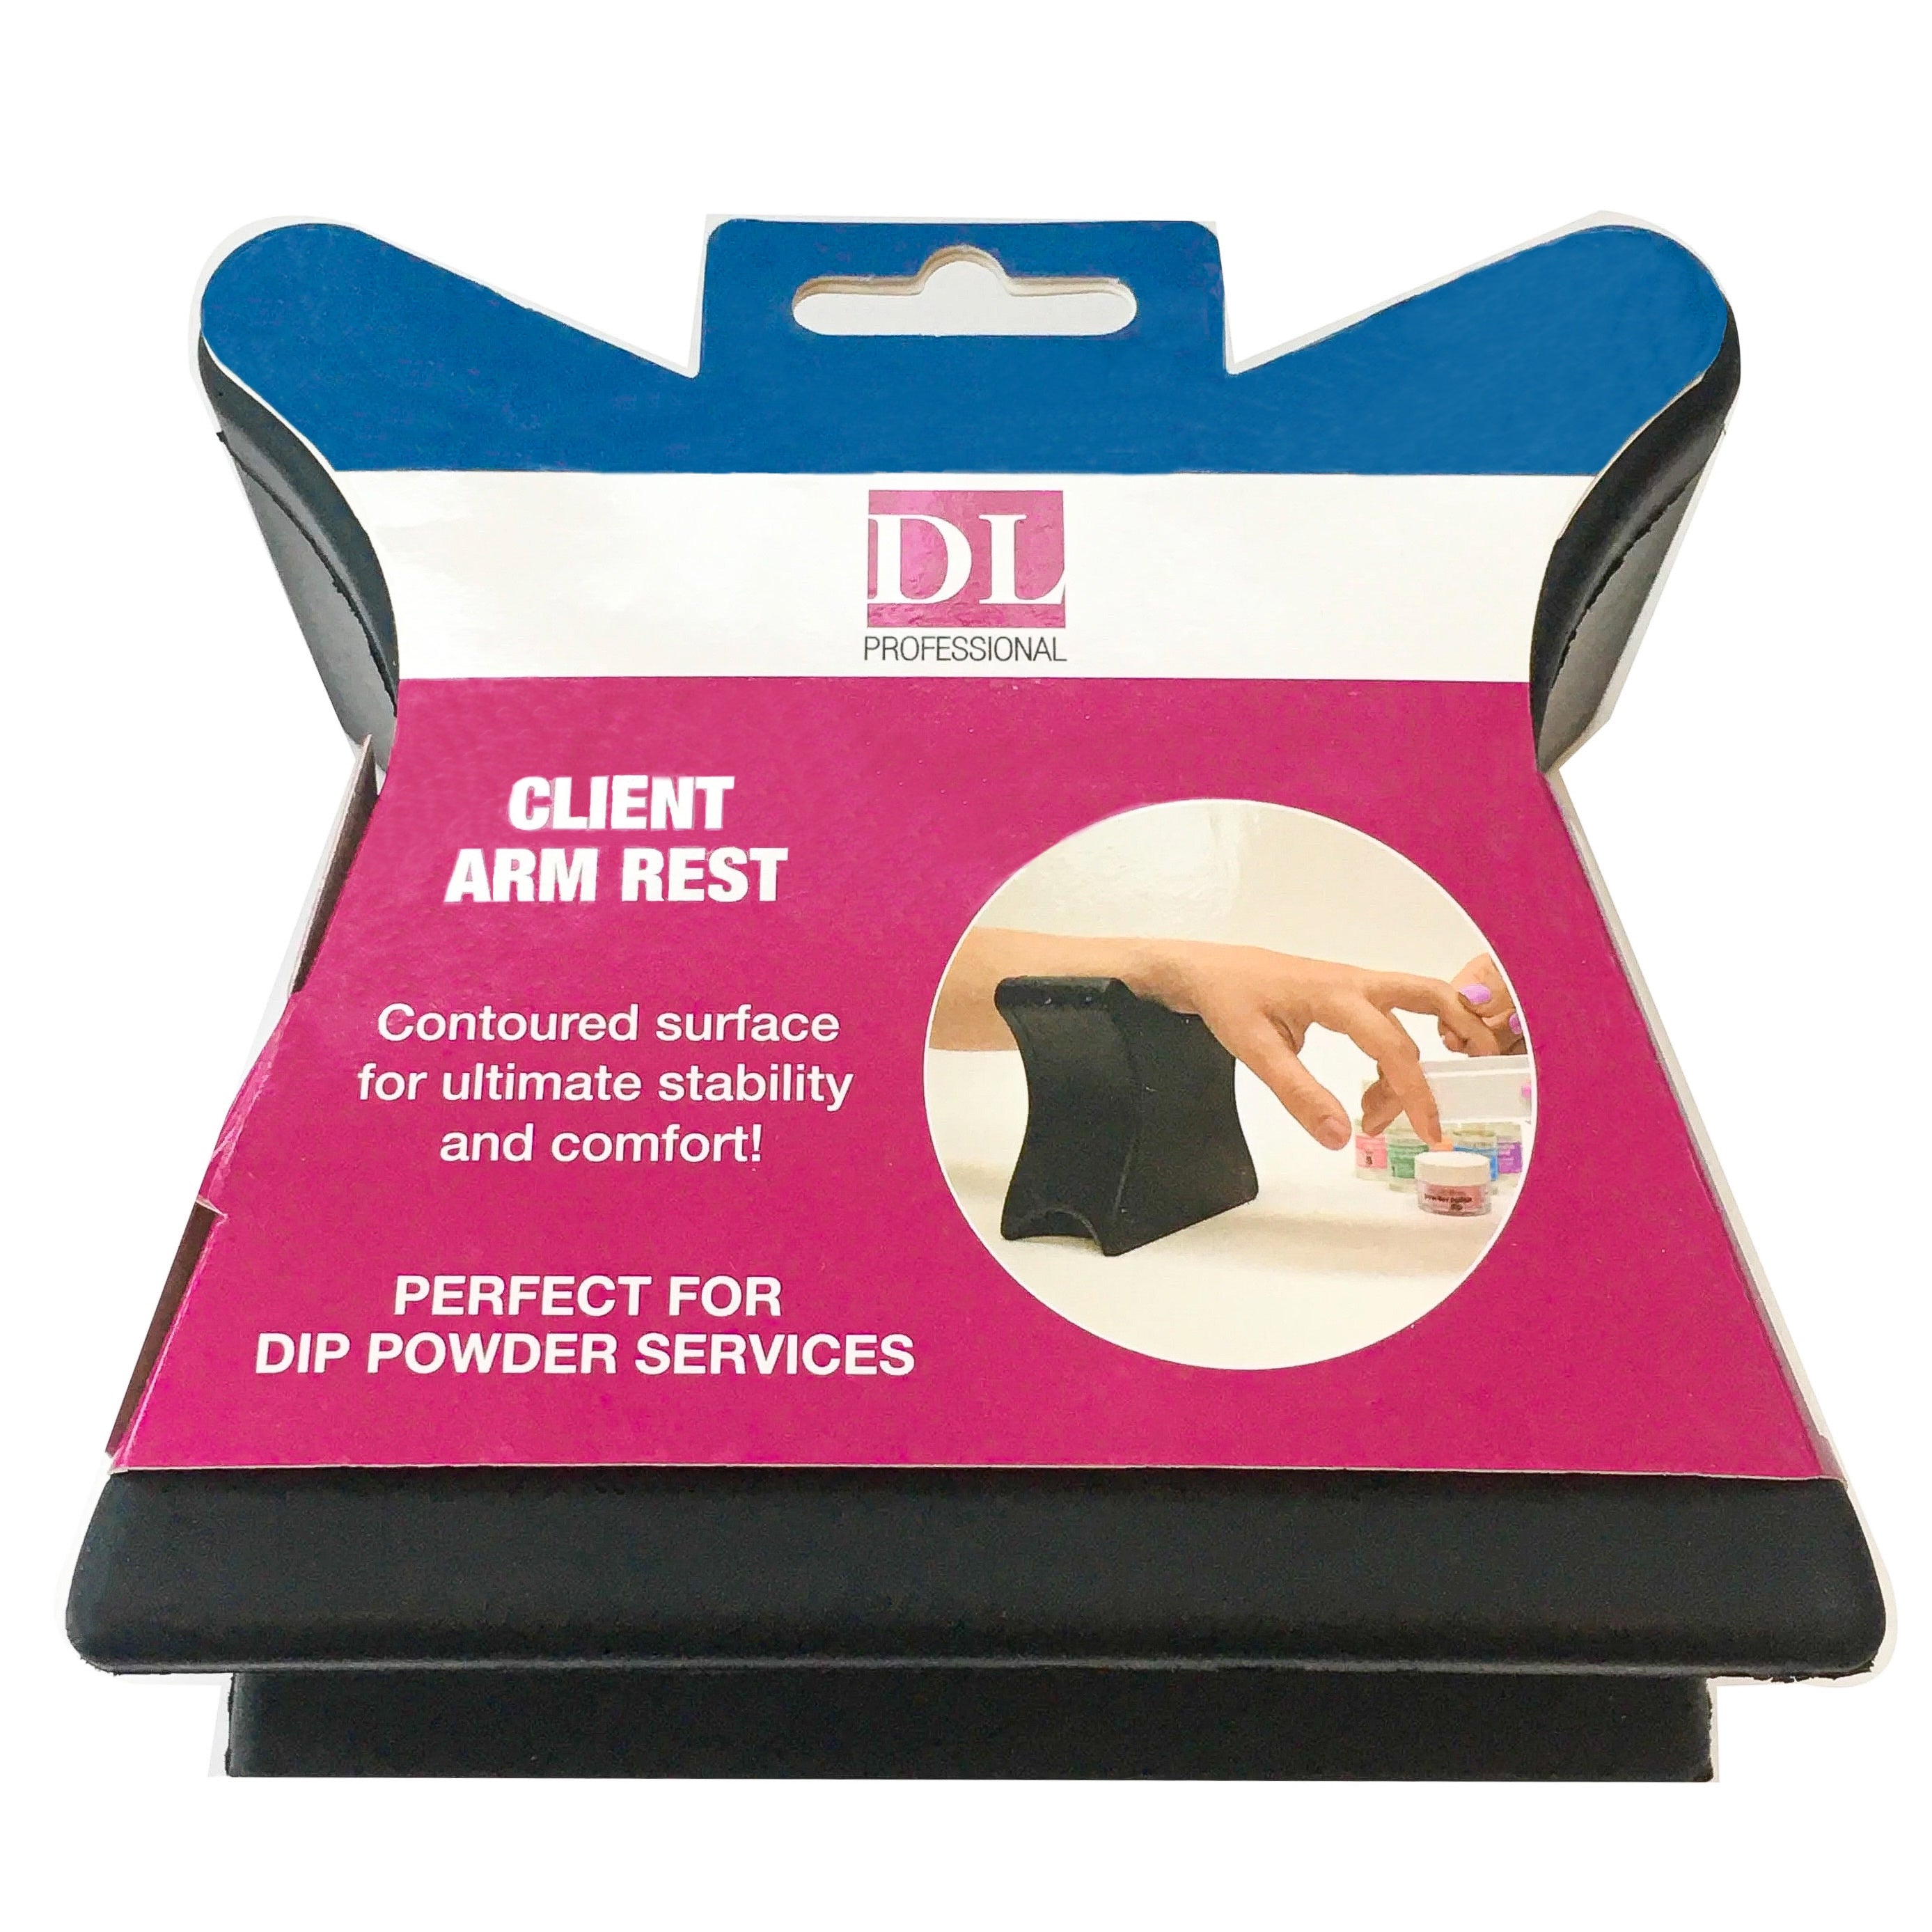 DL Professional Client Arm Rest